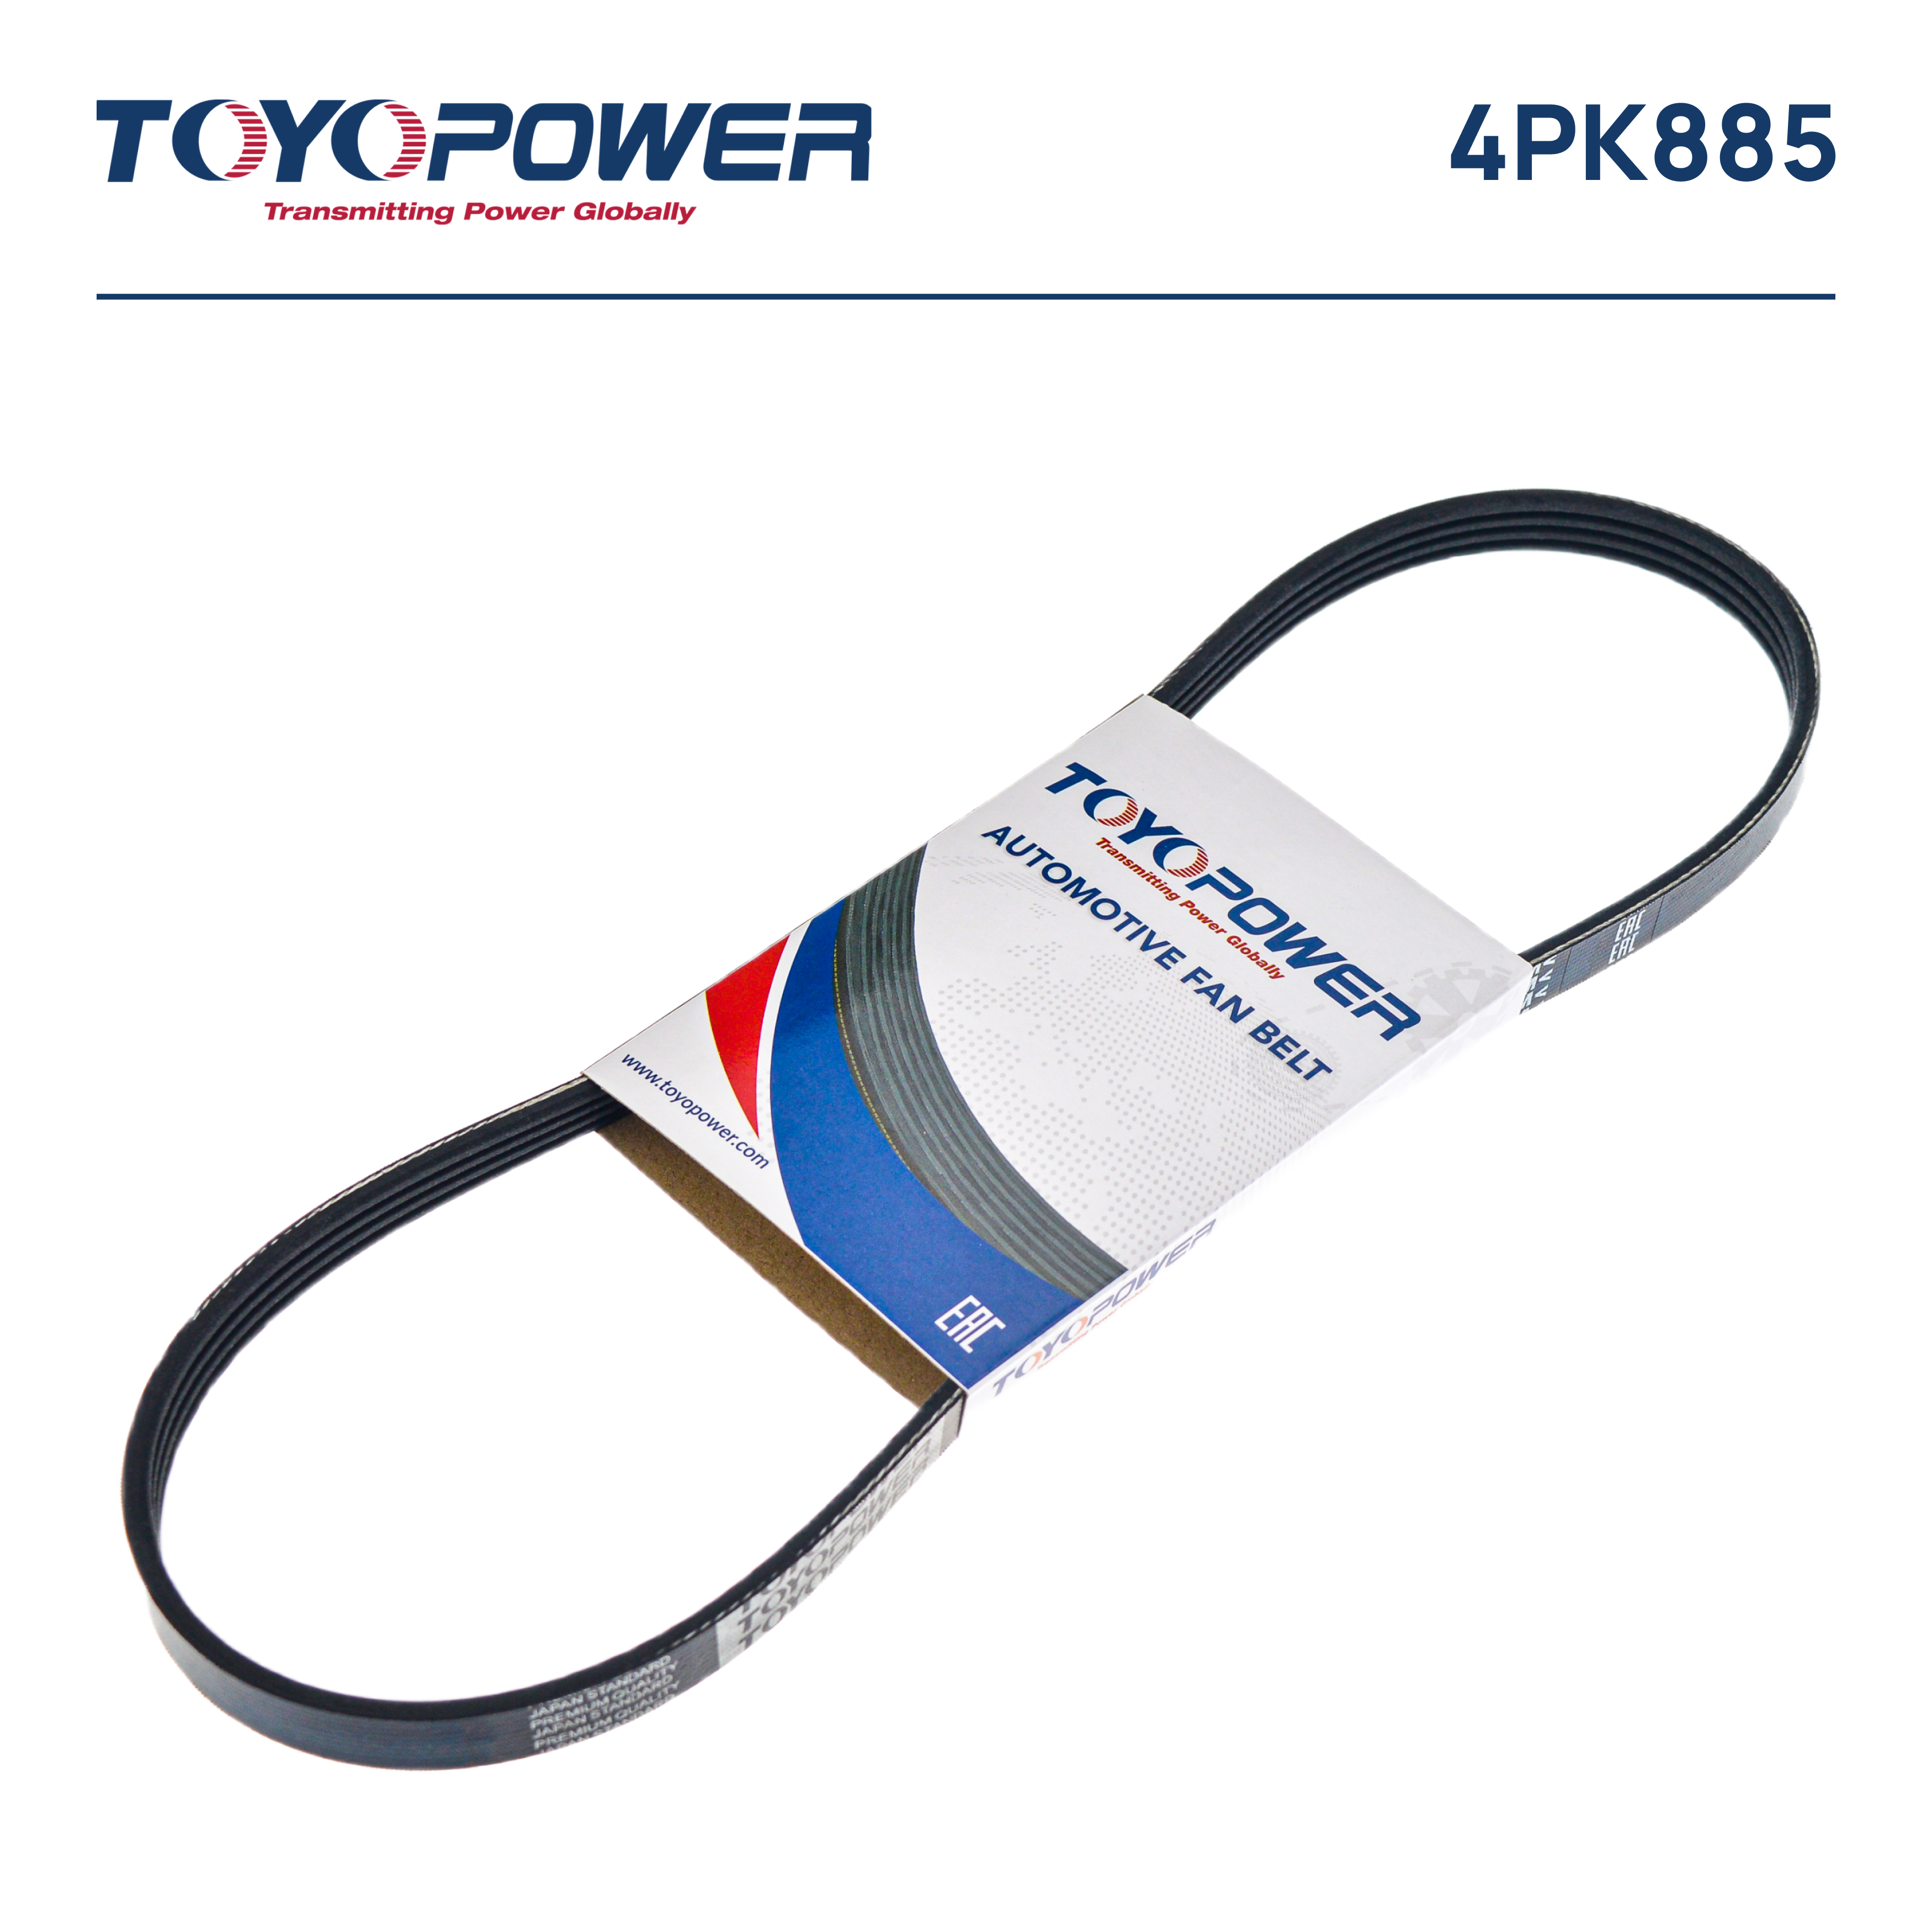 Ремень поликлиновый - Toyopower 4PK885